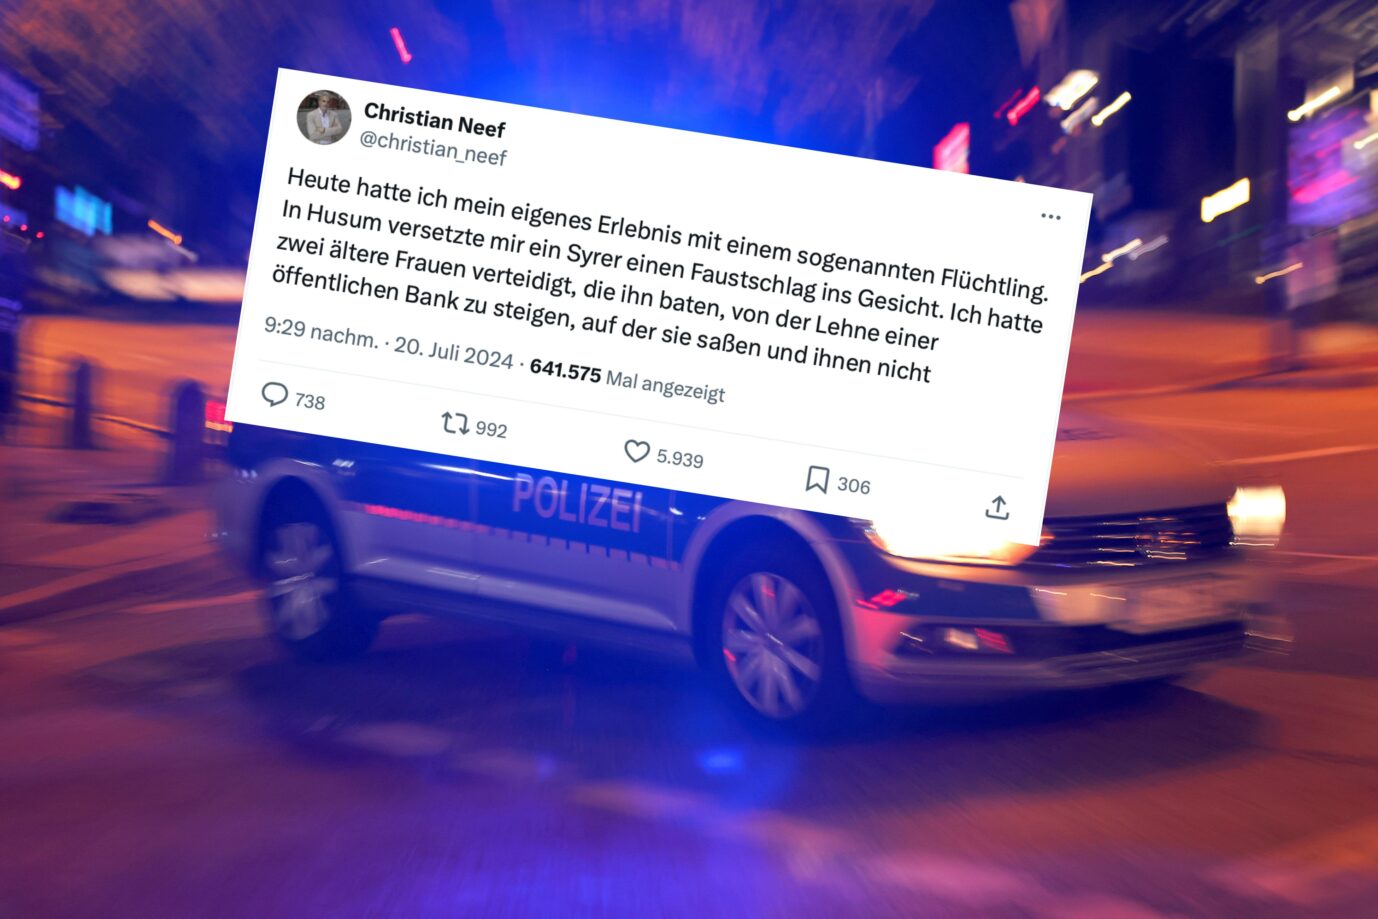 Das Bild ist eine Fotomontage eines Polizeiautos und des Tweets von Christian Neef, der sich über einen gewalttätigen 13jährigen Syrer beschwert.